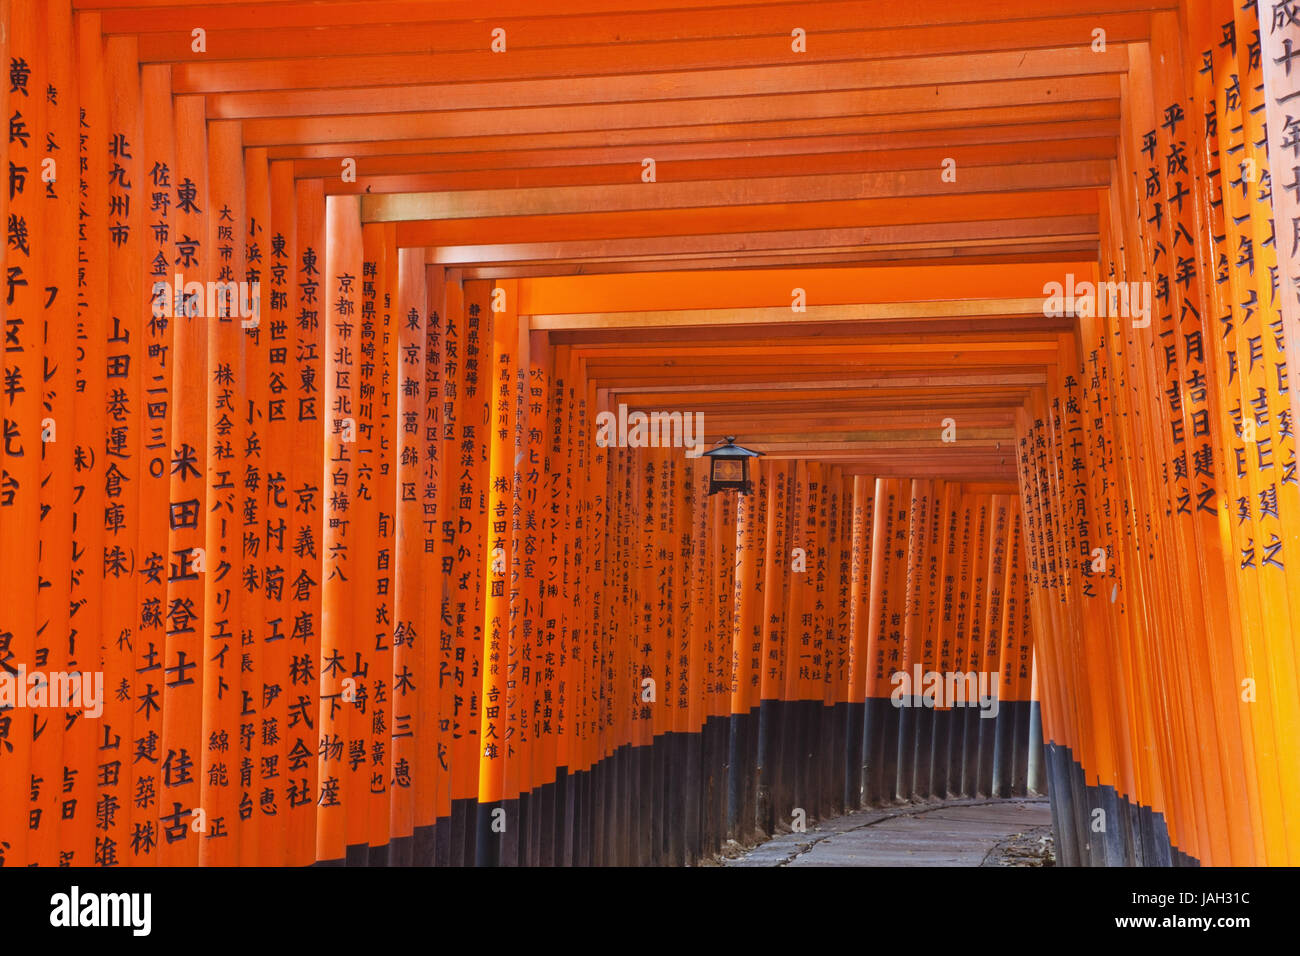 Giappone,Kyoto,Fushimi Inari Taisha,modo,obiettivi,gallerie,rosso, Foto Stock